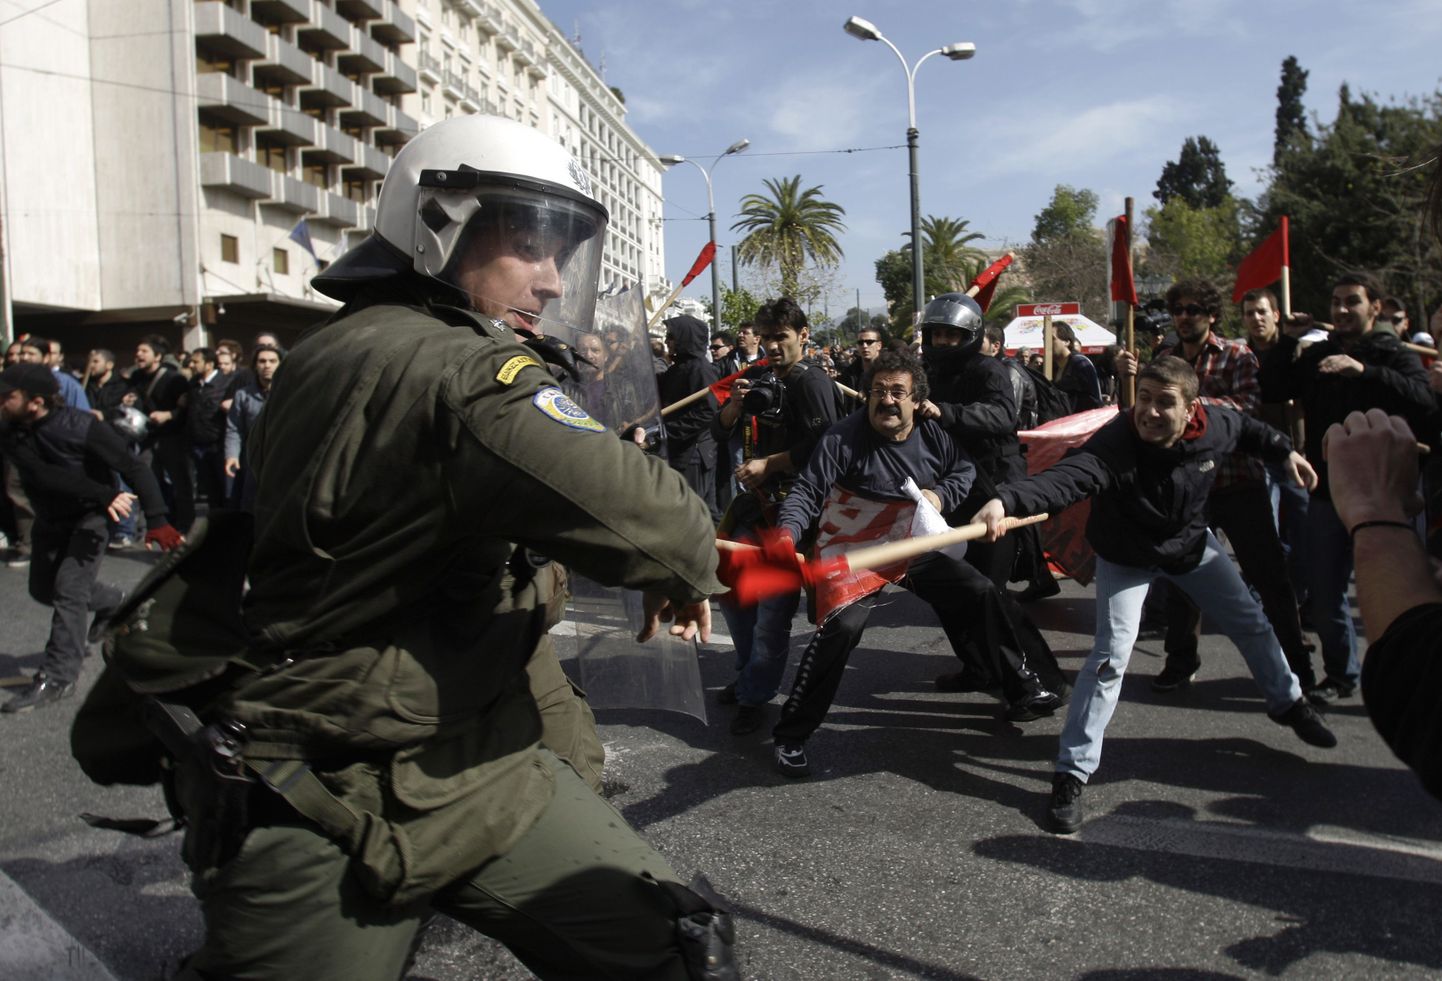 Kreeka politsei rahustamas meeleavaldajaid Ateenas. Kreeklased protestivad valitsuse kokkuhoiukavade vastu.